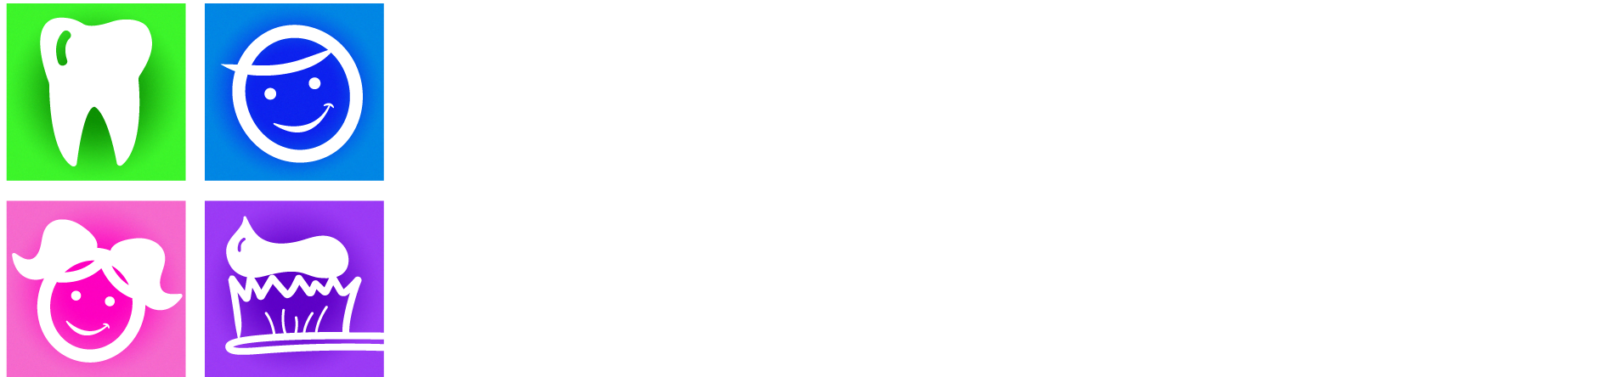 all kids dental logo